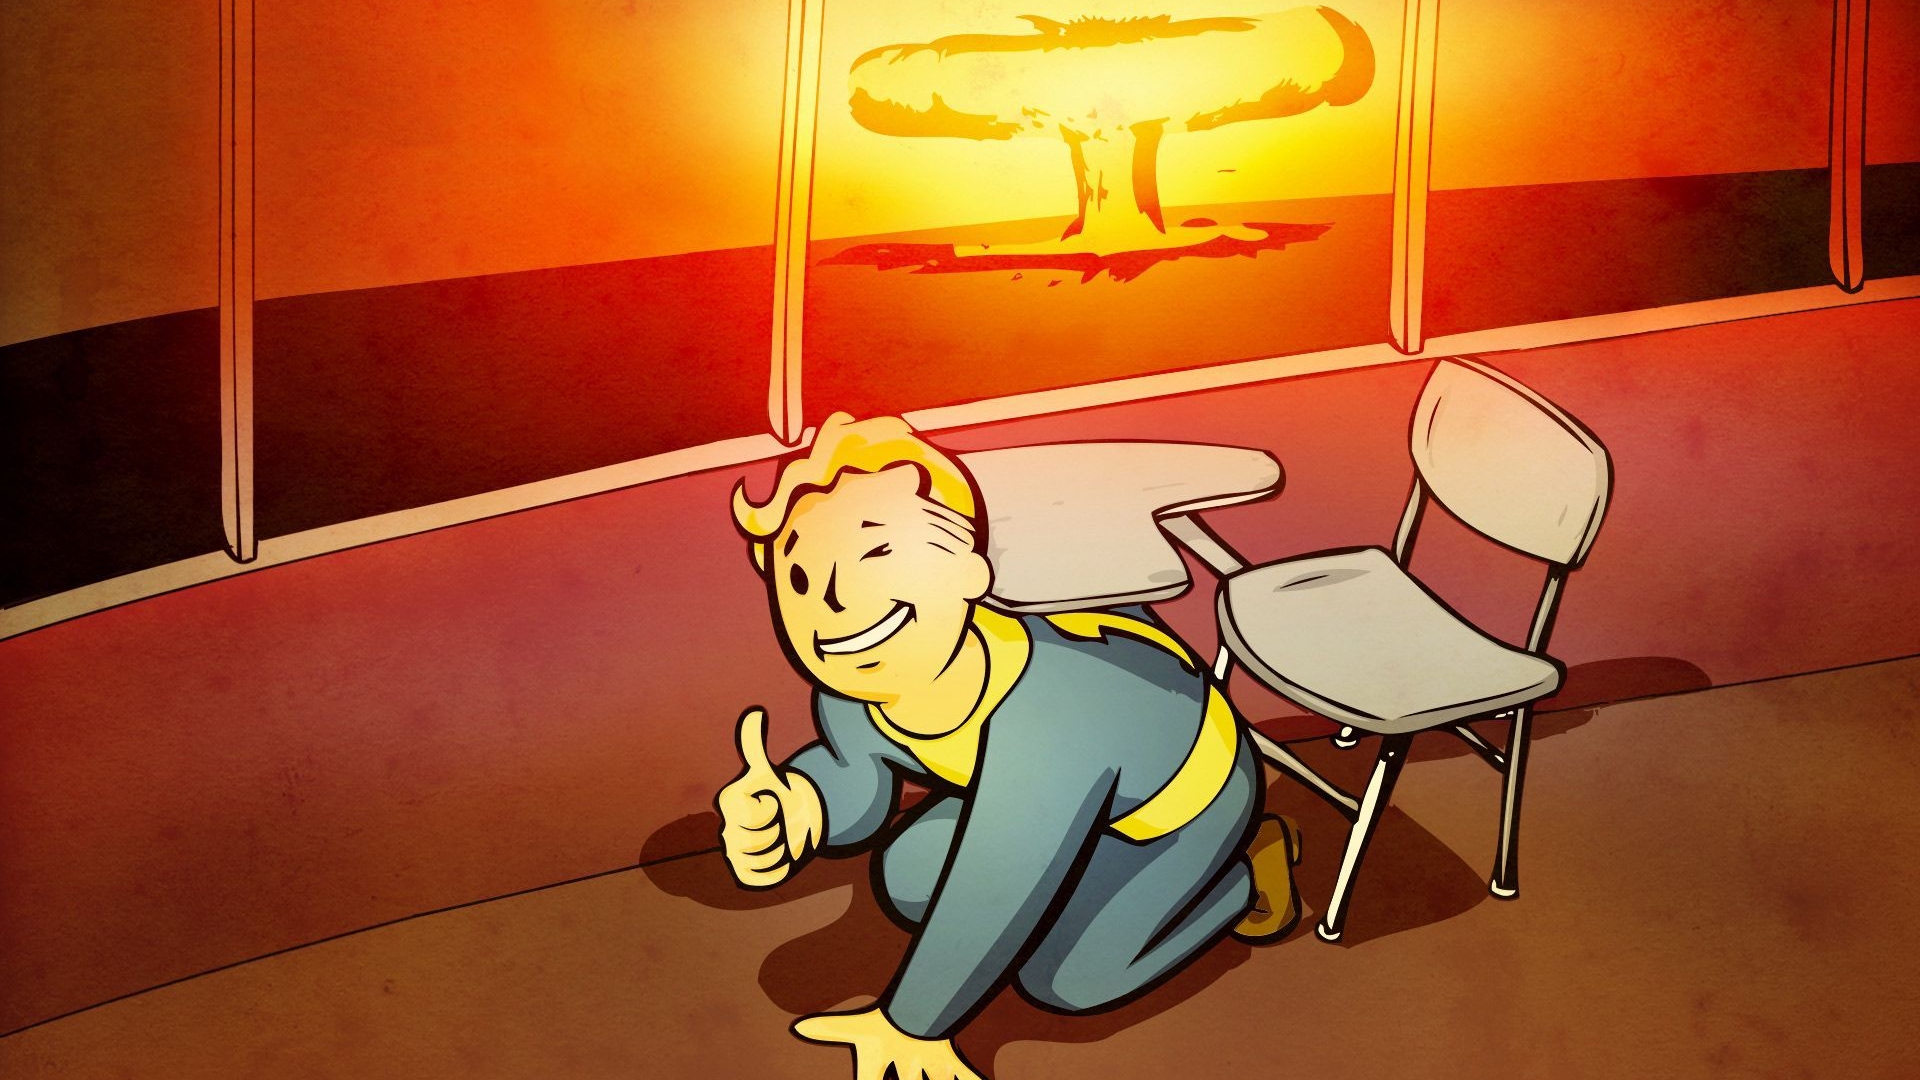 Fallout 2 Tactical Map  Fallout 2, Fallout, Fallout new vegas